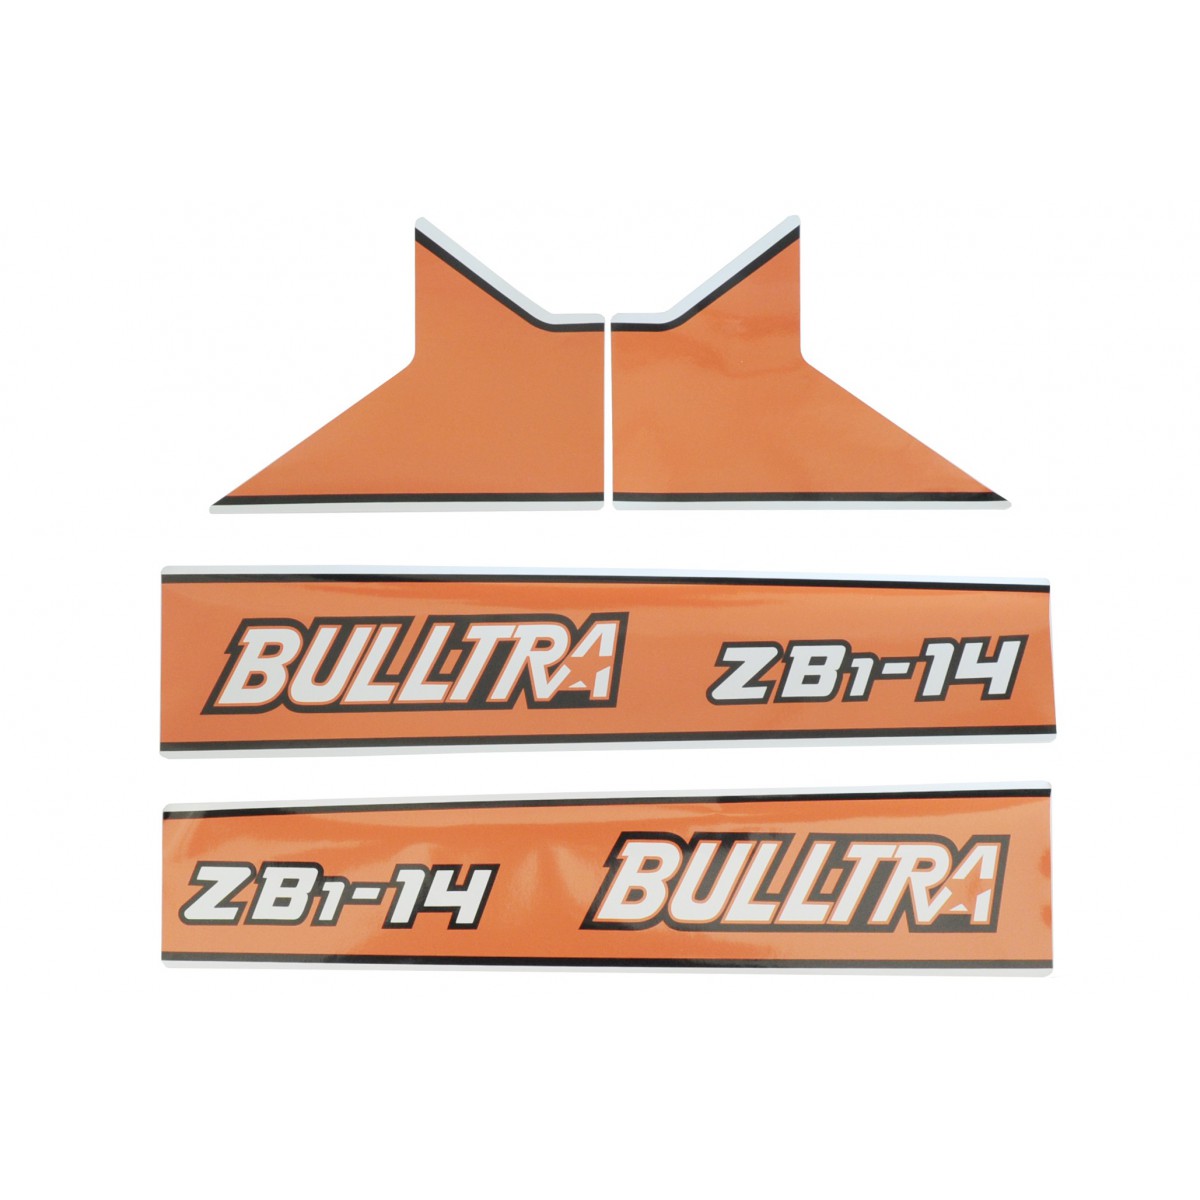 Kubota Bulltra B1-14, ZB1-14 stickers